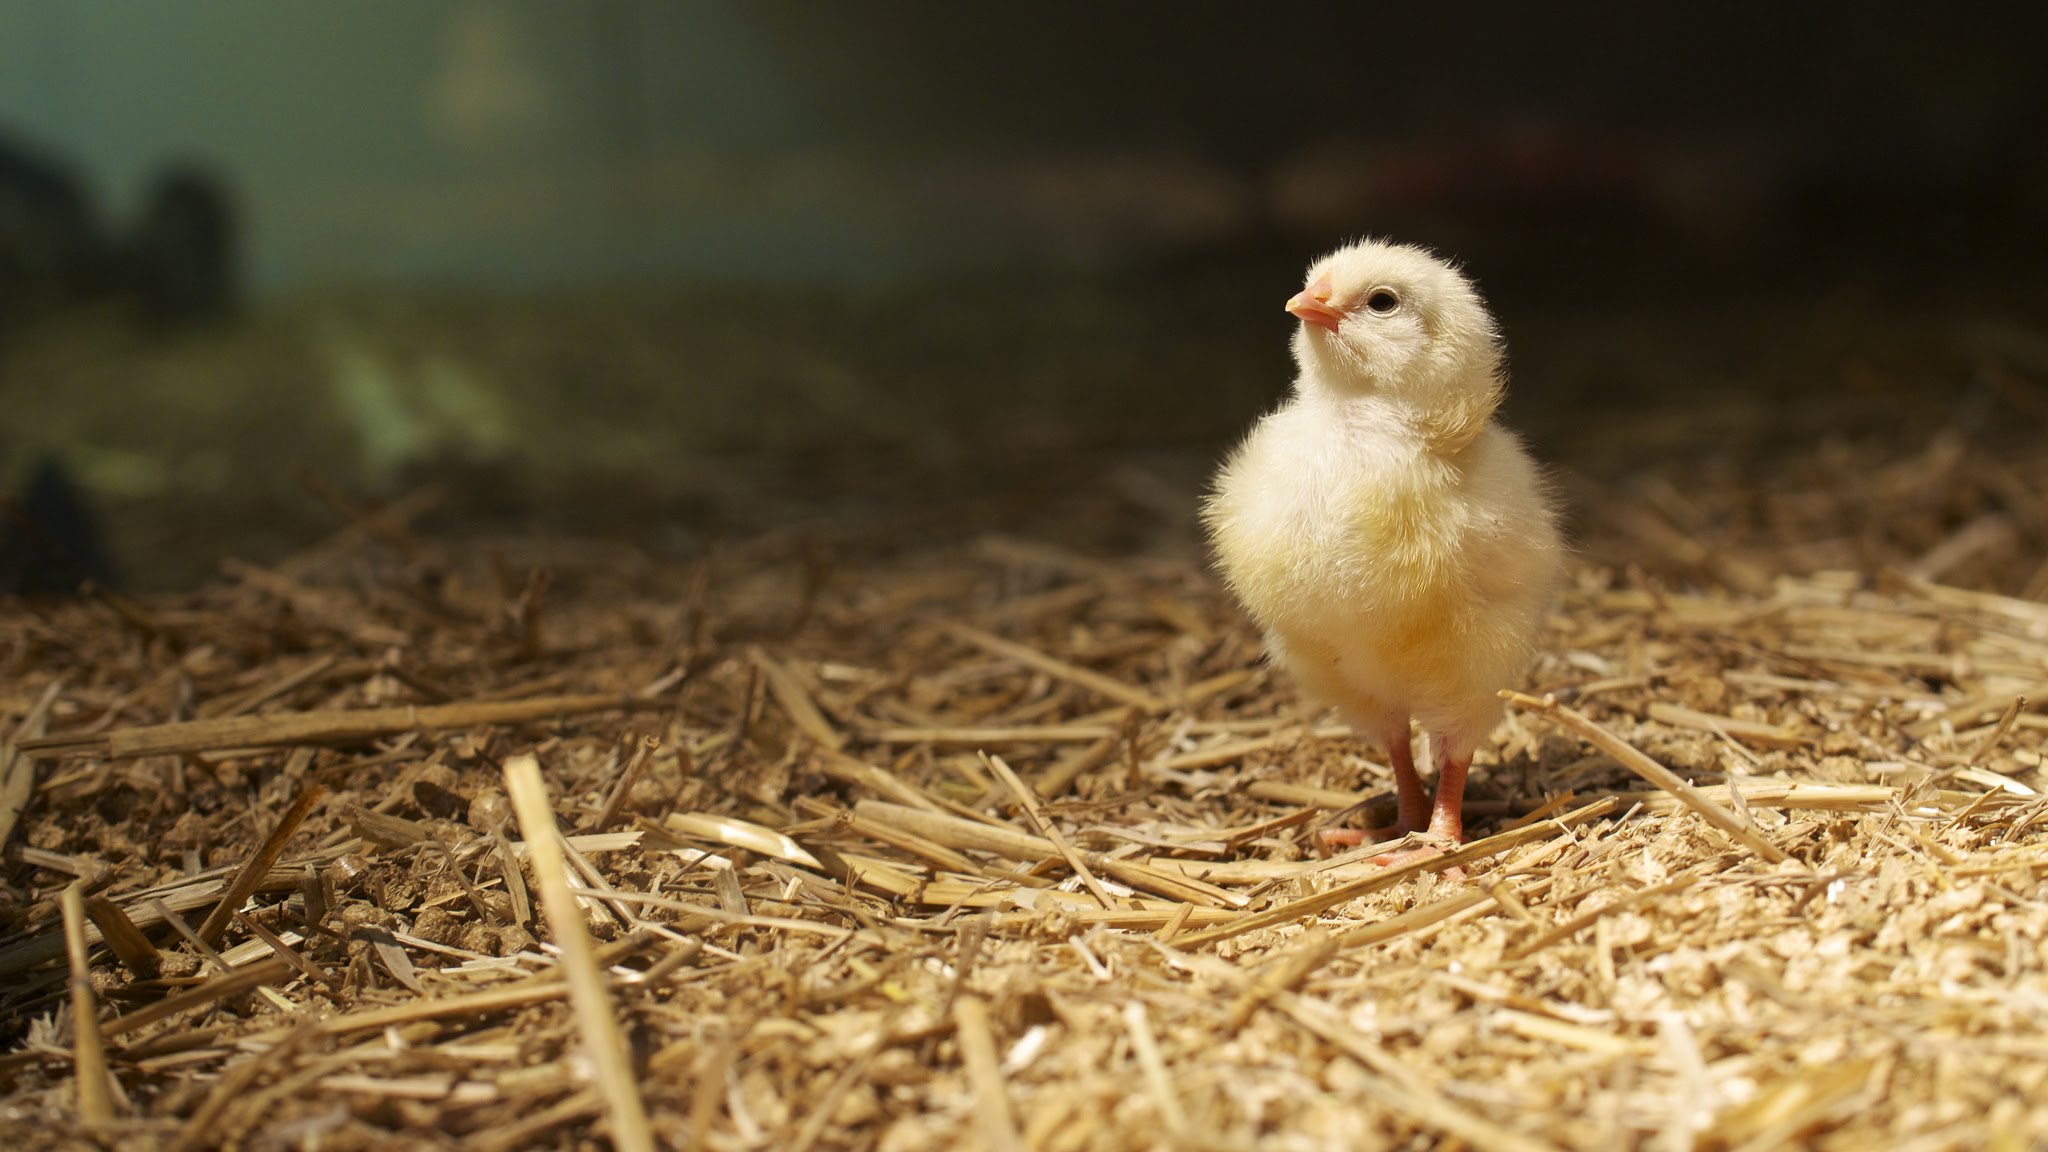 Видео про выращивание цыплёнка без скорлупы: реальность или подделка? - 1